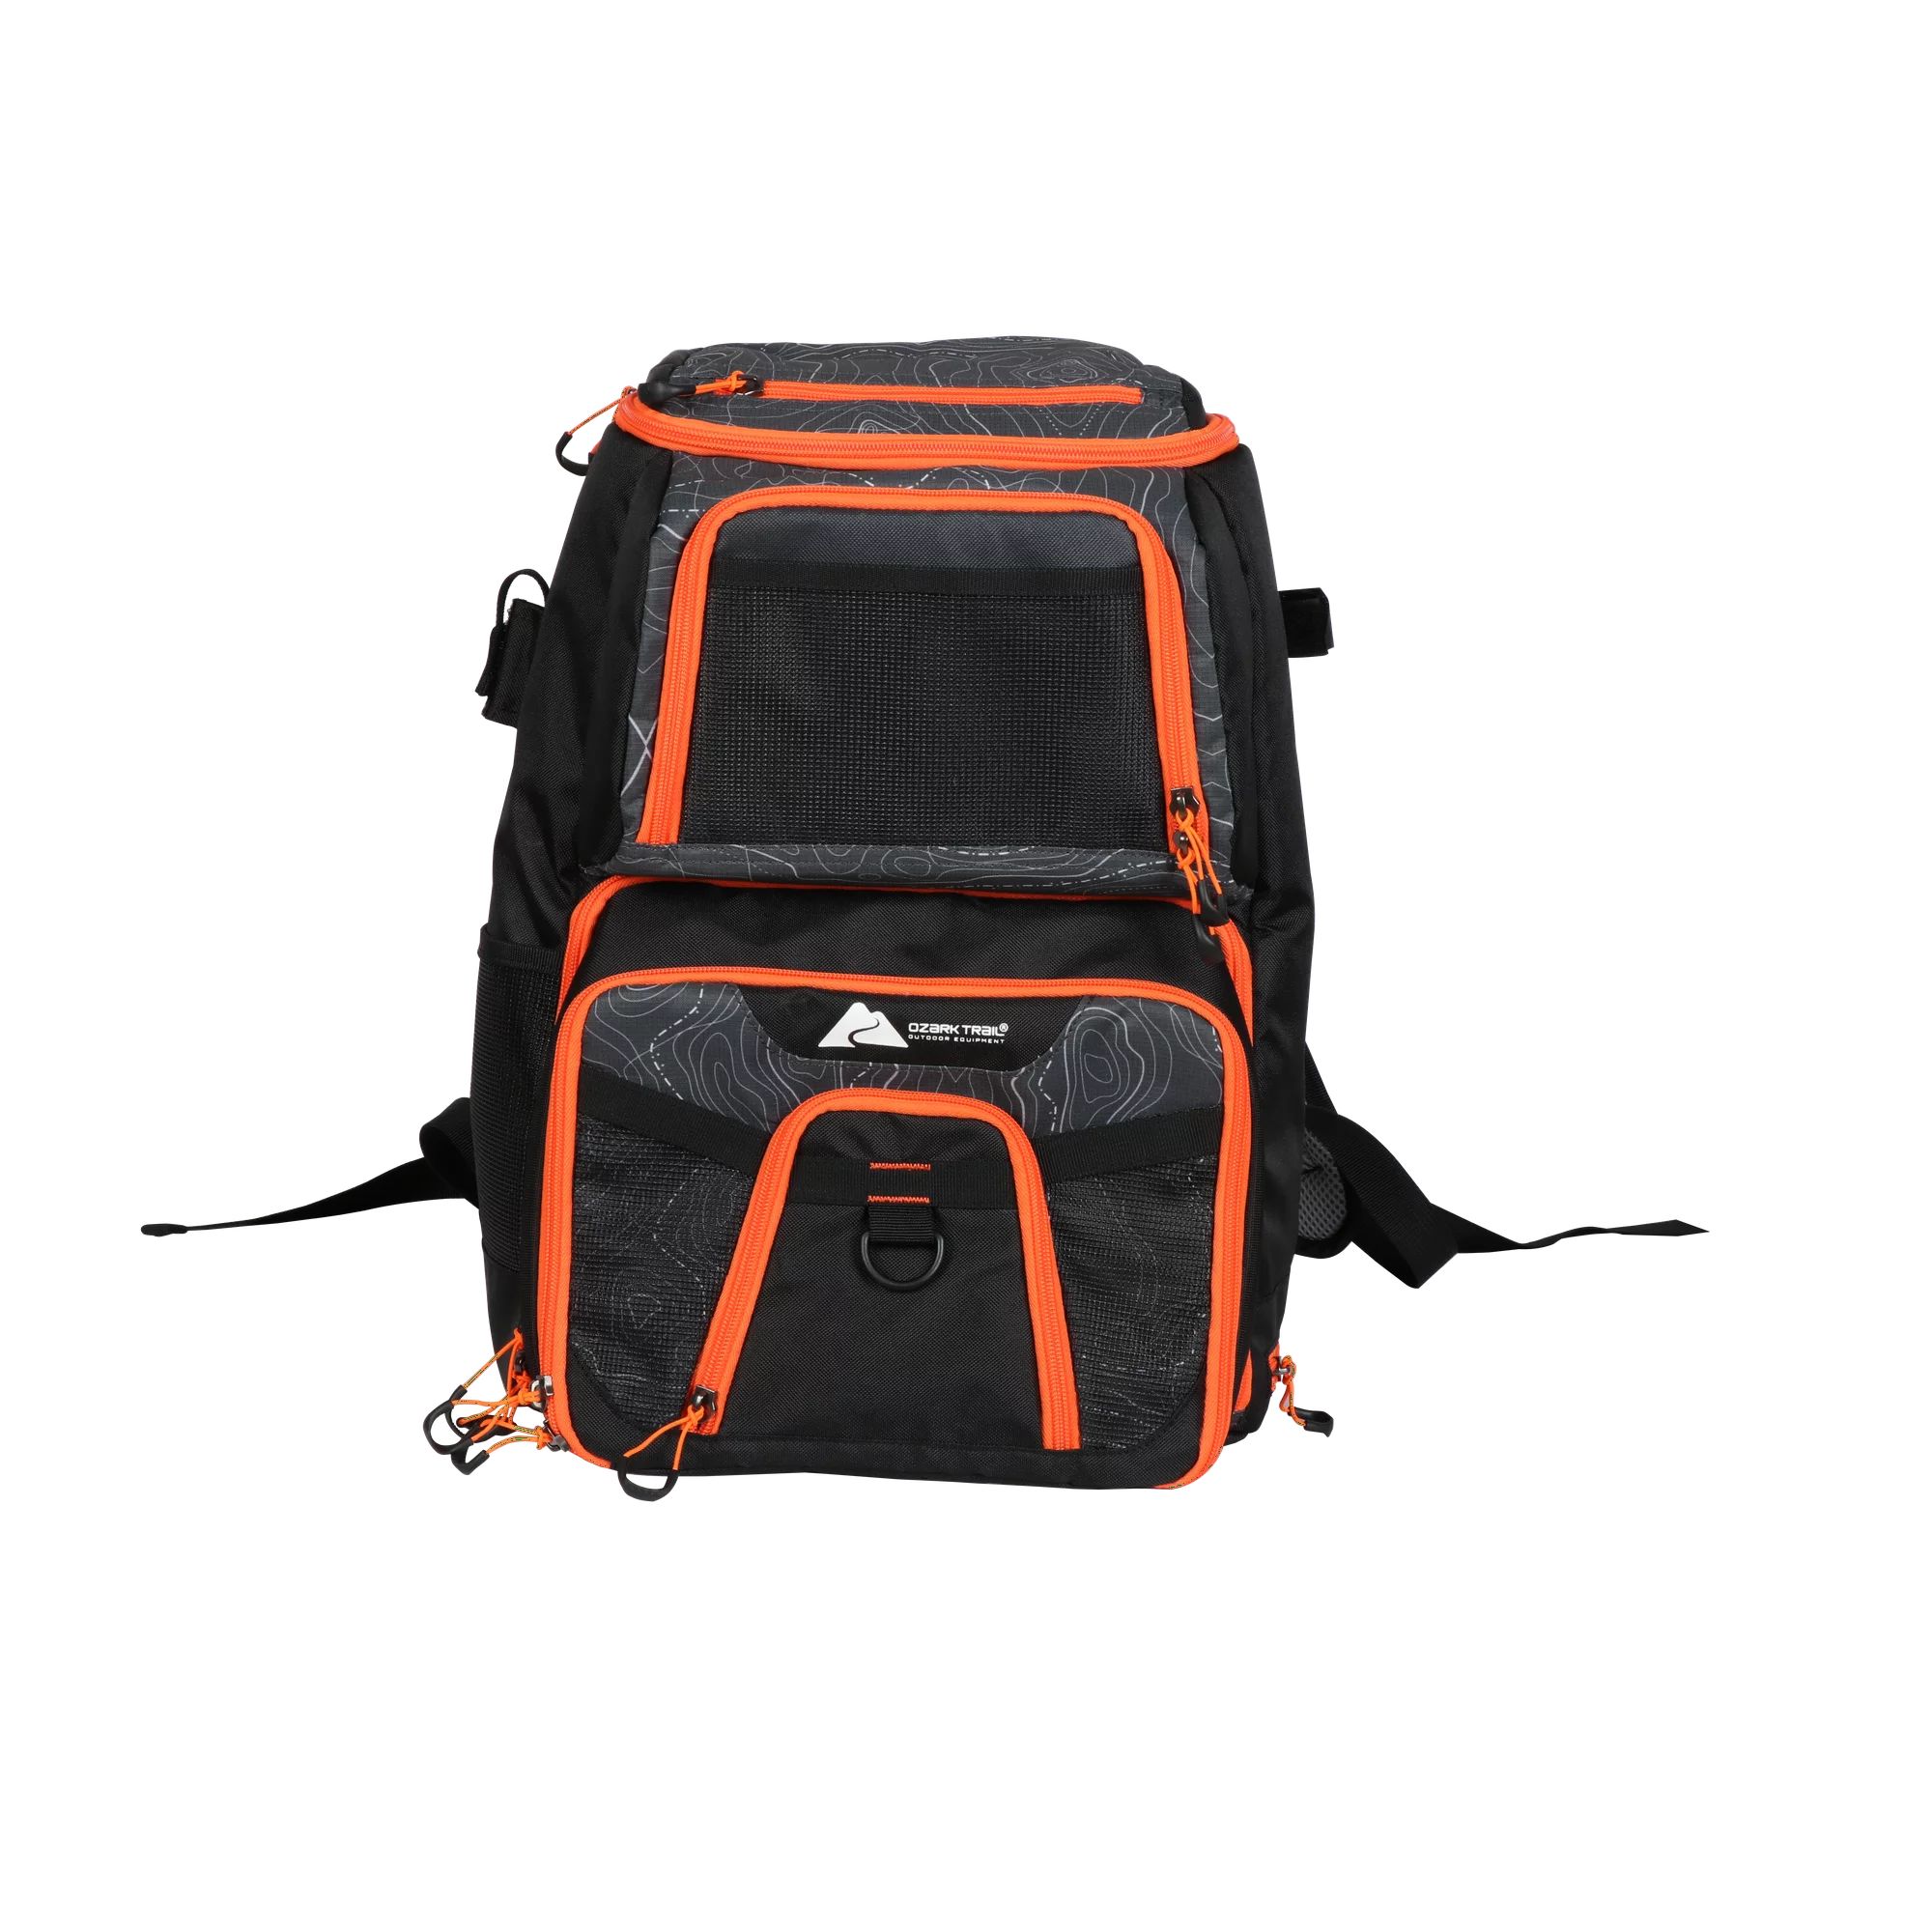 Ozark Trail Elite Fishing Tackle Backpack with Bait Cooler, Black | Walmart (US)